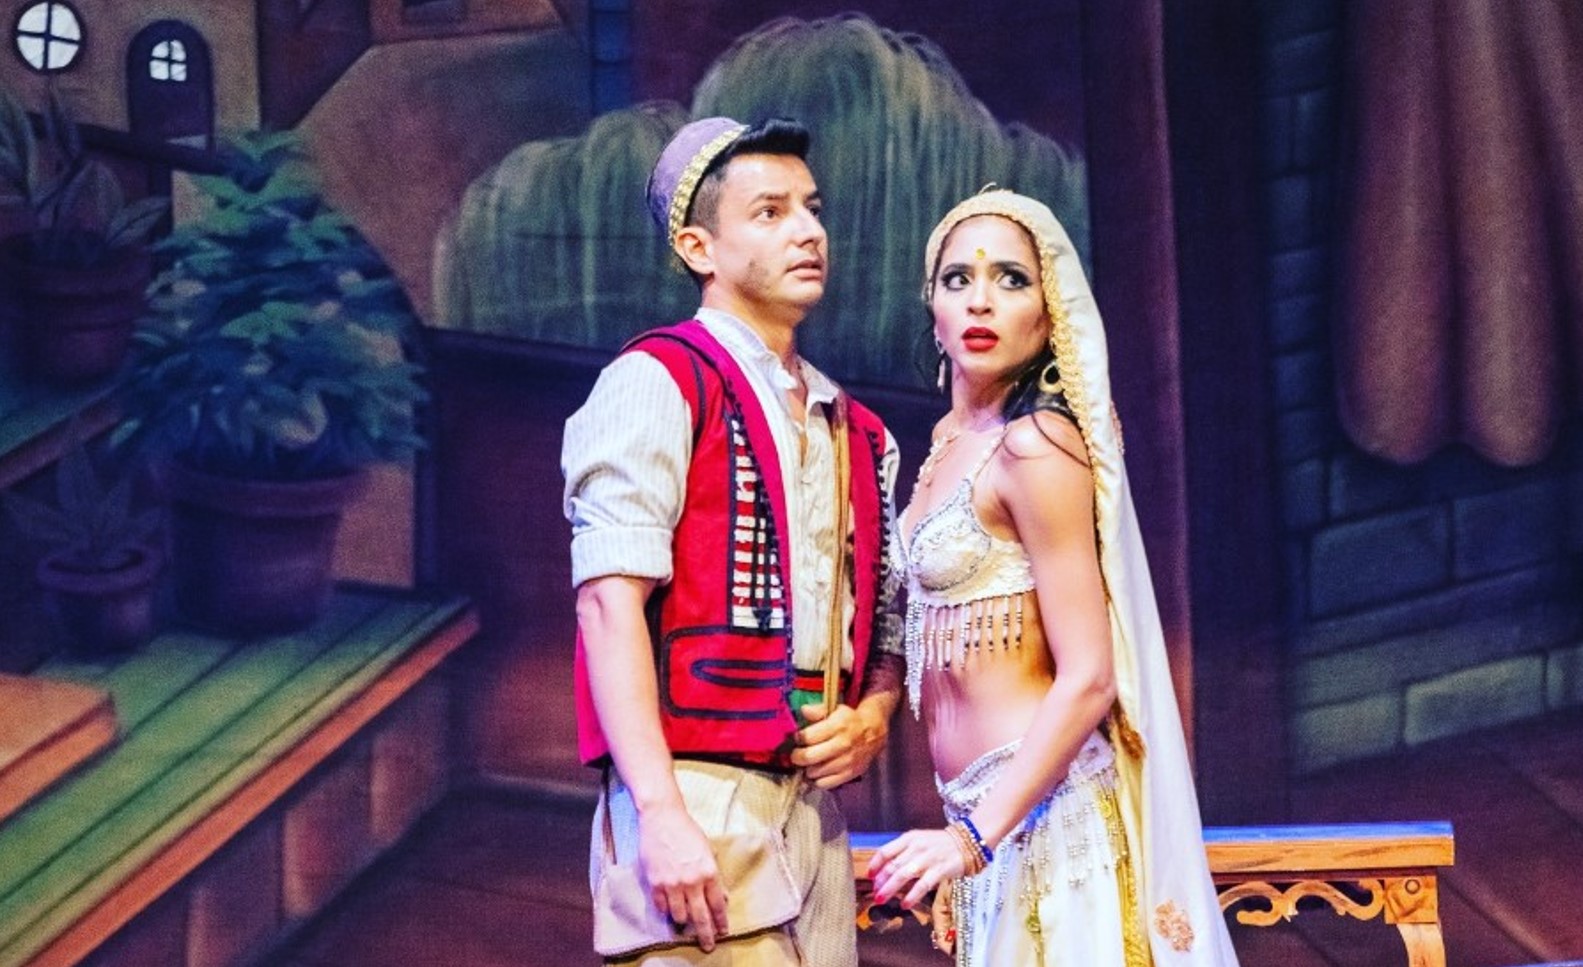 Espetáculo "Aladdin e a Lâmpada Maravilhosa" em Goiânia